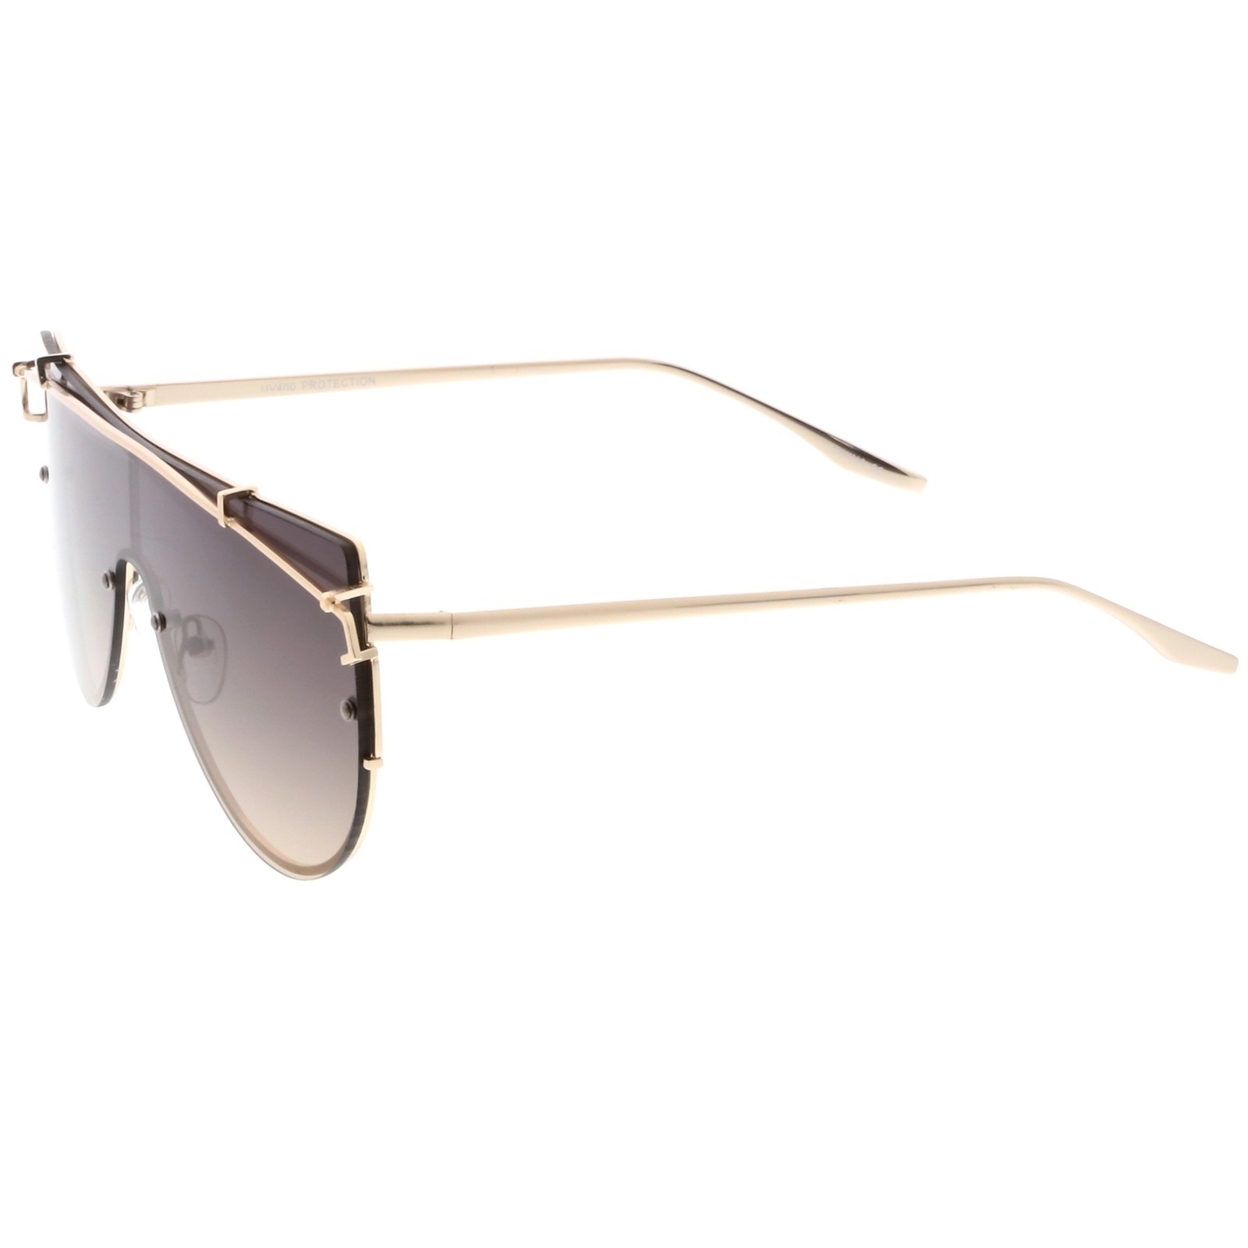 Futuristic Rimless Metal Crossbar Nuetral Colored Mono Lens Shield Sunglasses 64mm - Gold / Lavender